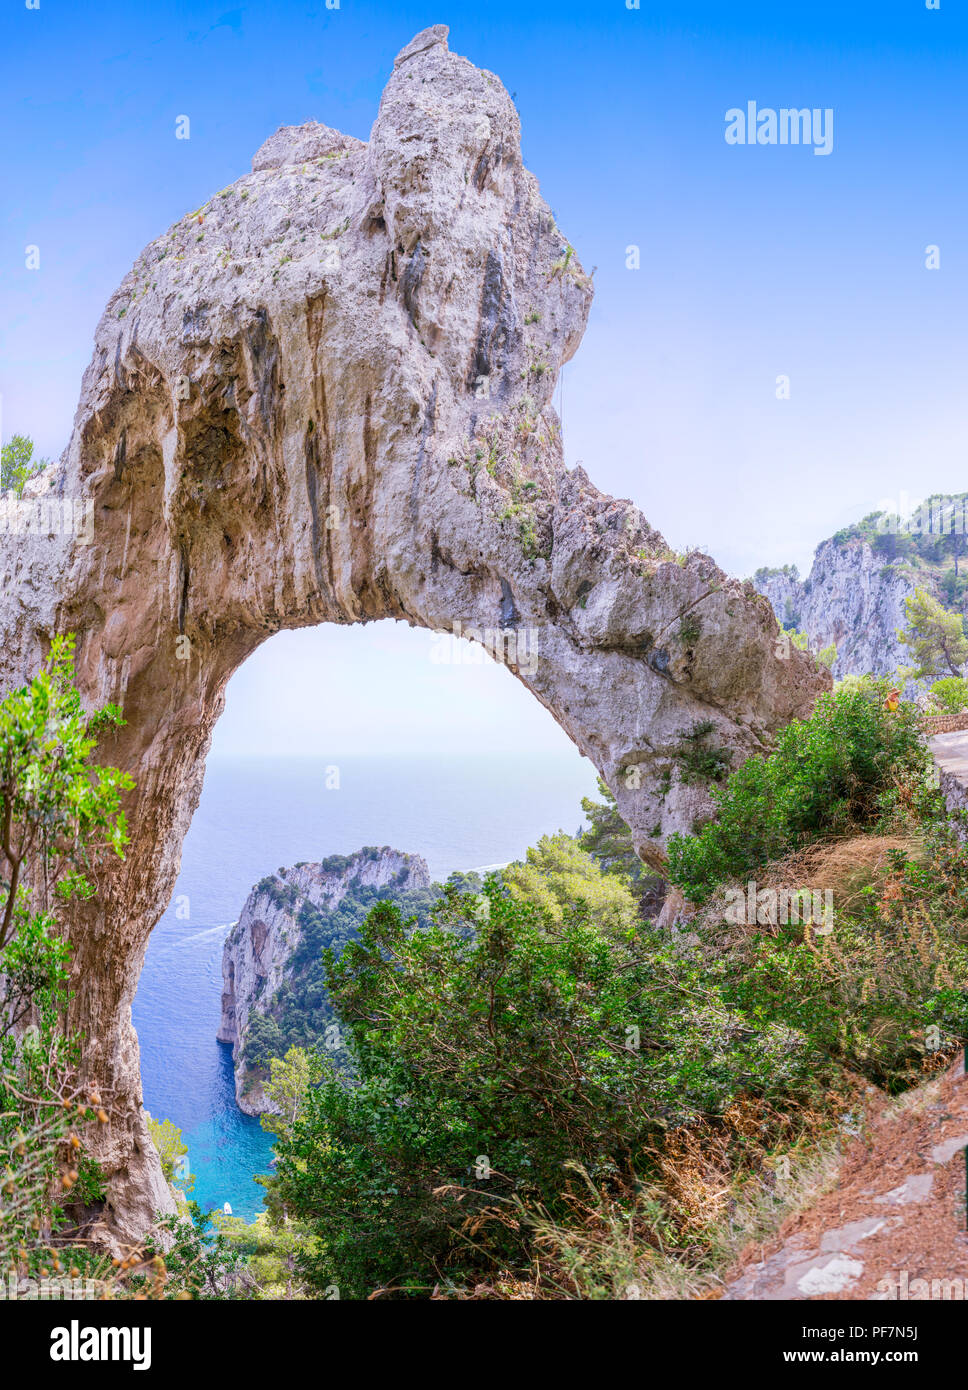 L'Arco Naturale (Arco naturale) su Capri, Italia, come visto dalla vicina area di visualizzazione. Foto Stock